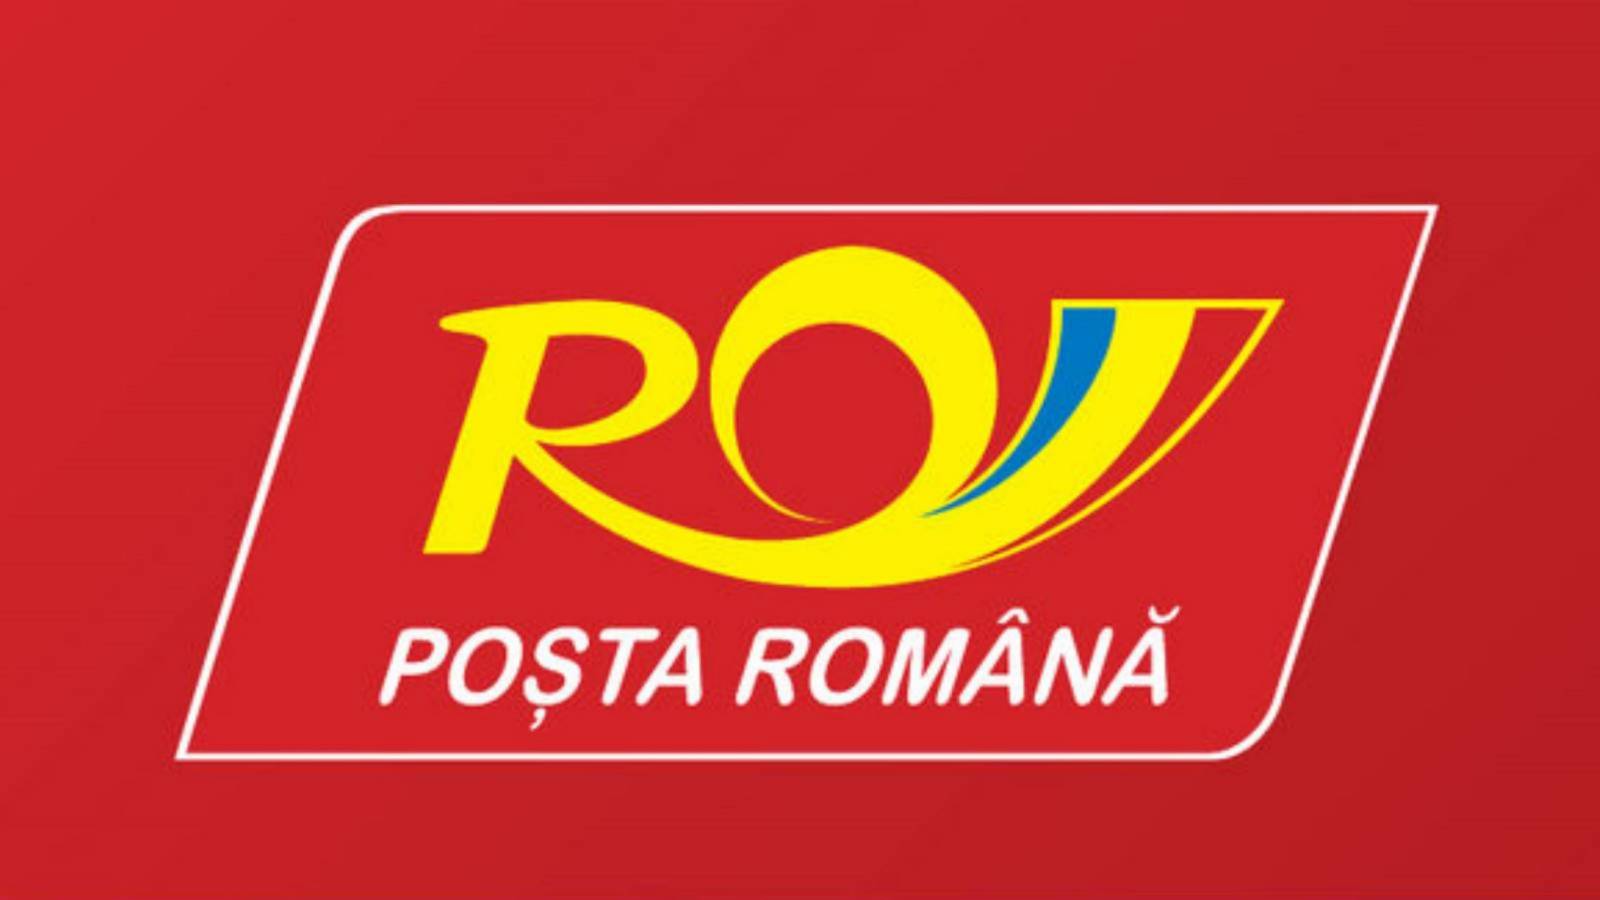 Advarsel om ondsindet rumænsk post